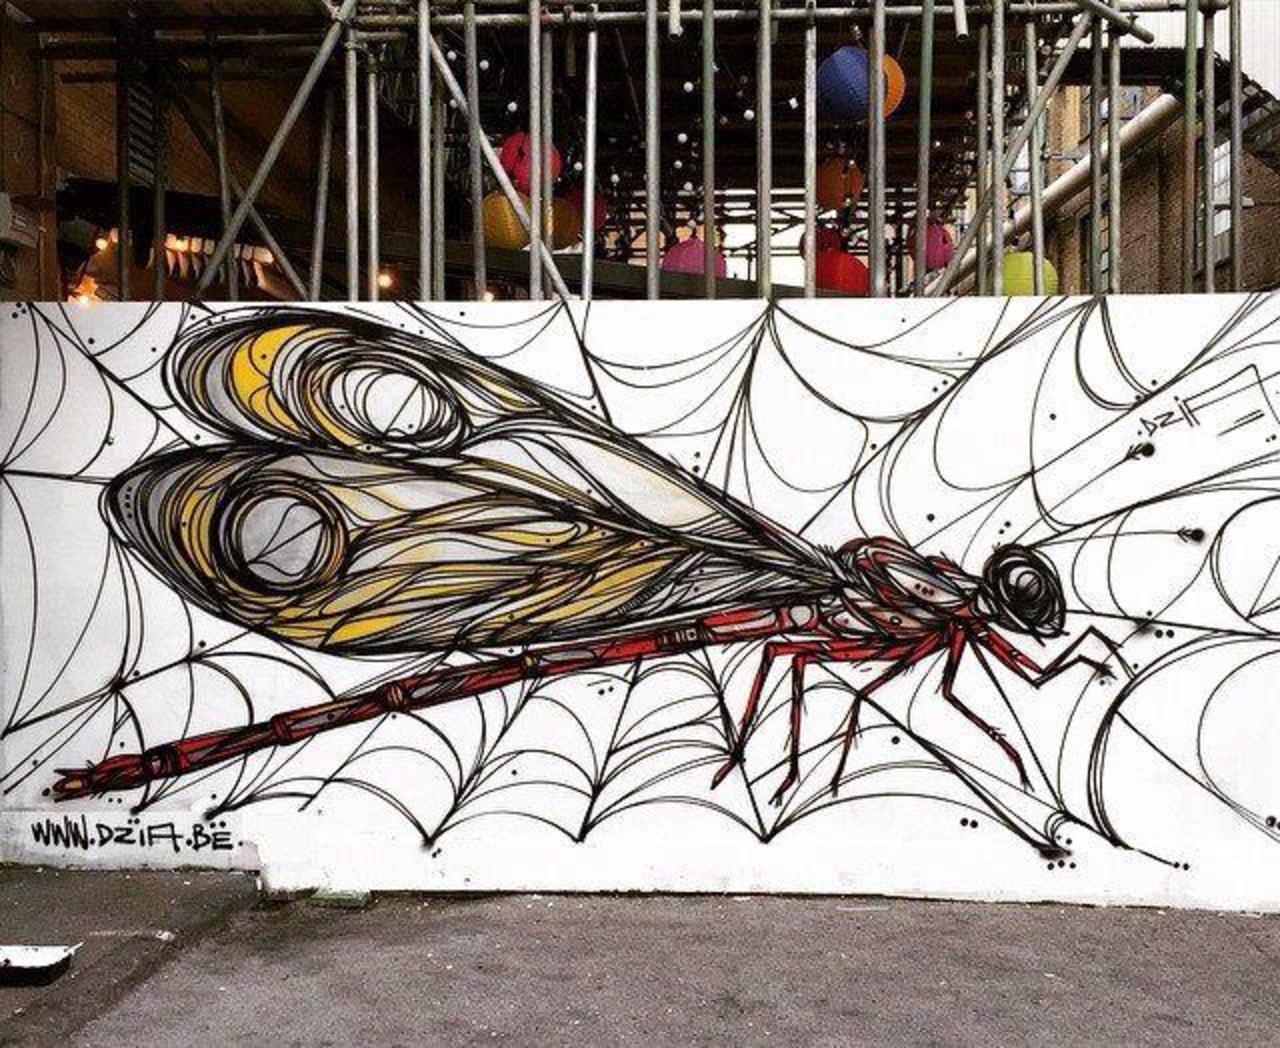 RT ArchaicManor "New Street Art by DZIA in London  

#art #arte #graffiti #streetart http://t.co/XQiRBoHrnW yo"